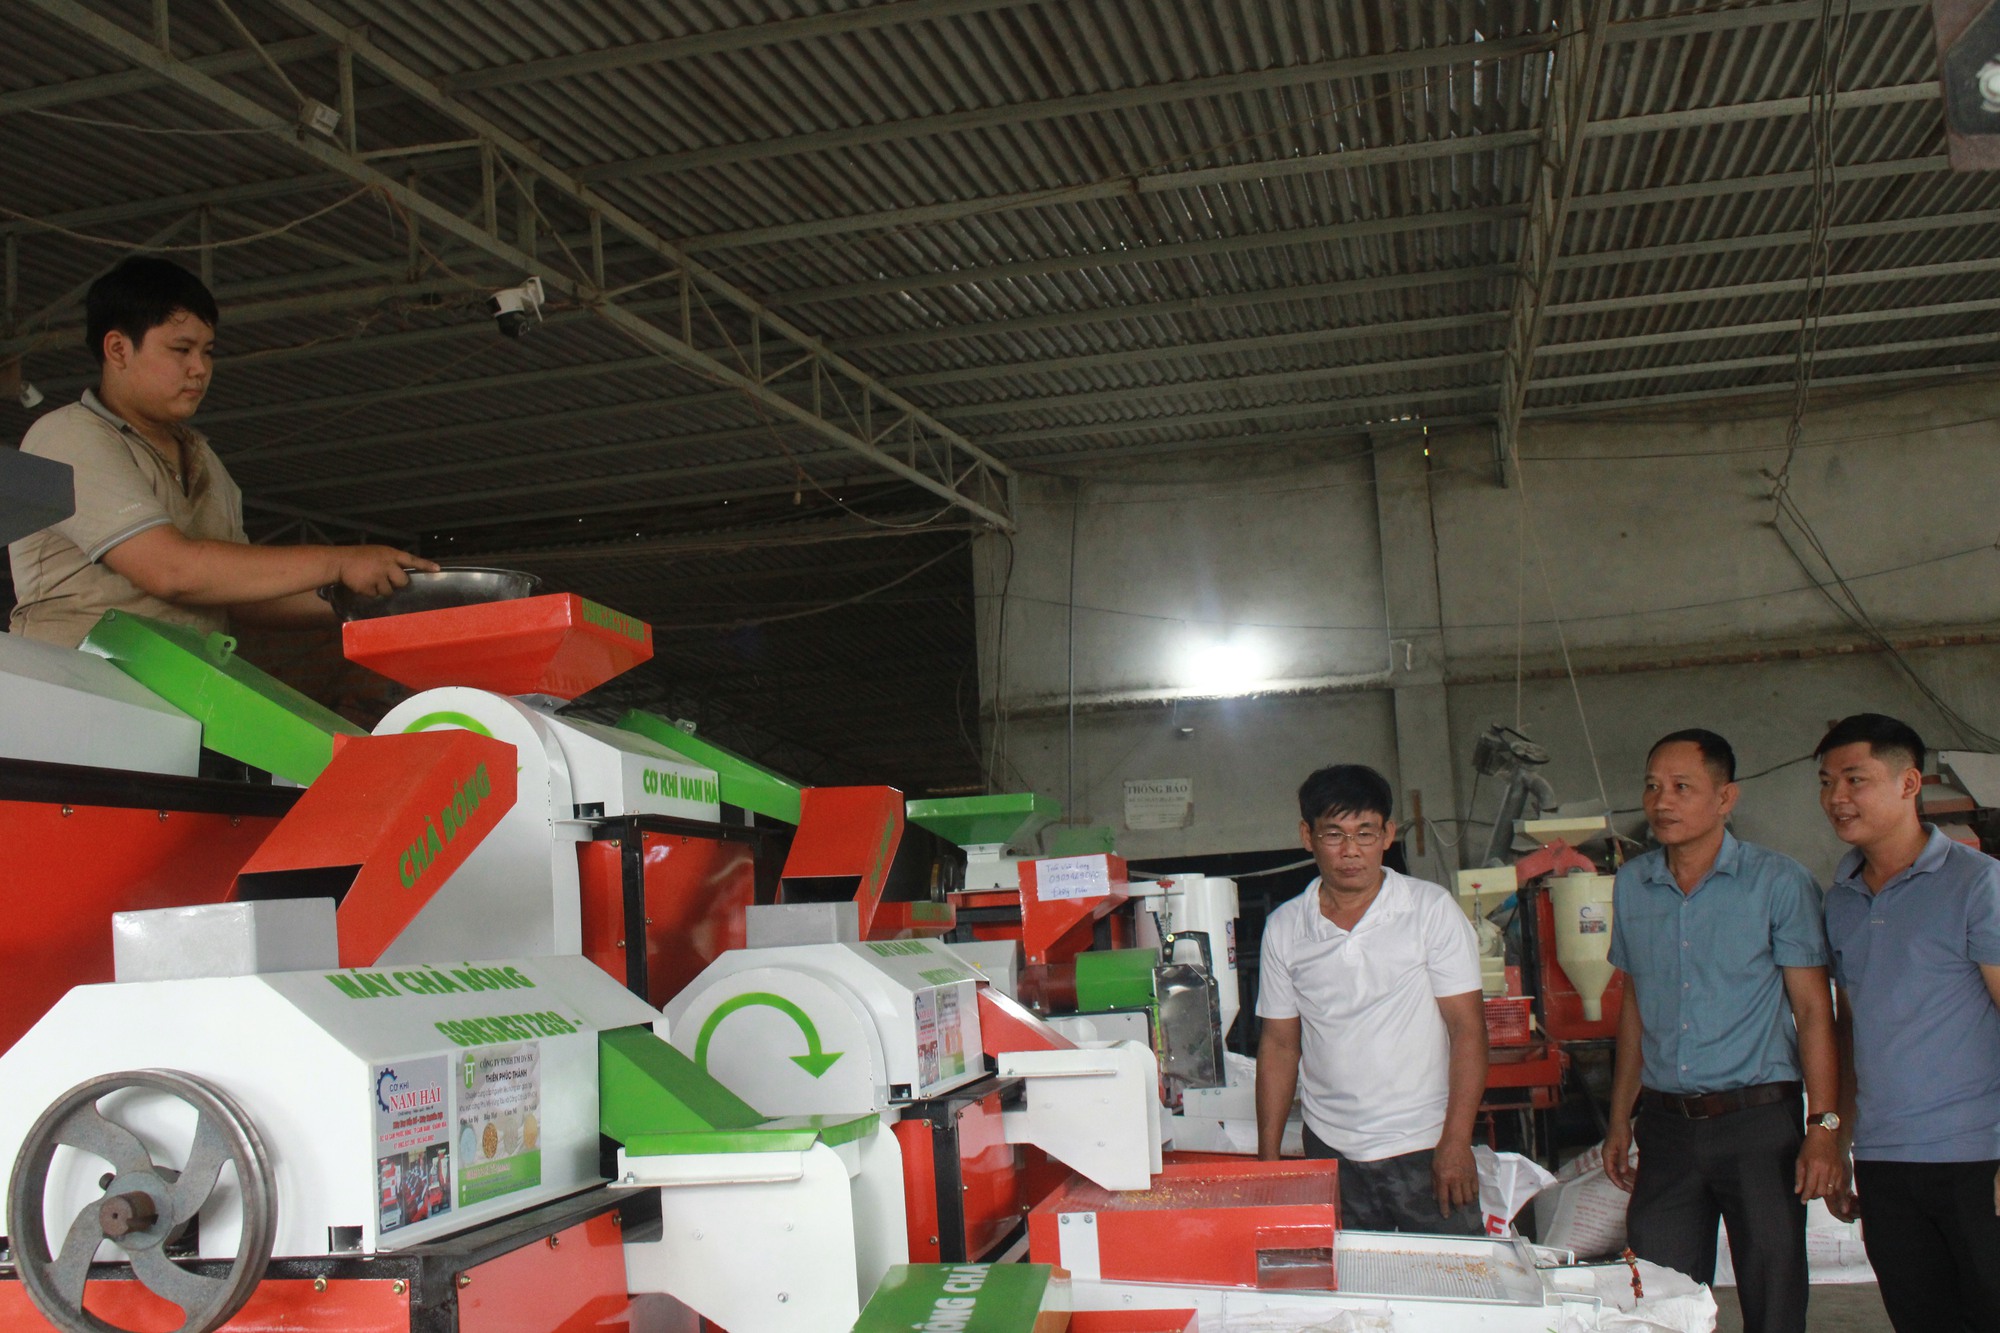 Kỹ sư 9x ở Khánh Hòa nghiên cứu chế tạo thành công máy xay bắp liên hoàn, khách hỏi mua nườm nượp - Ảnh 6.